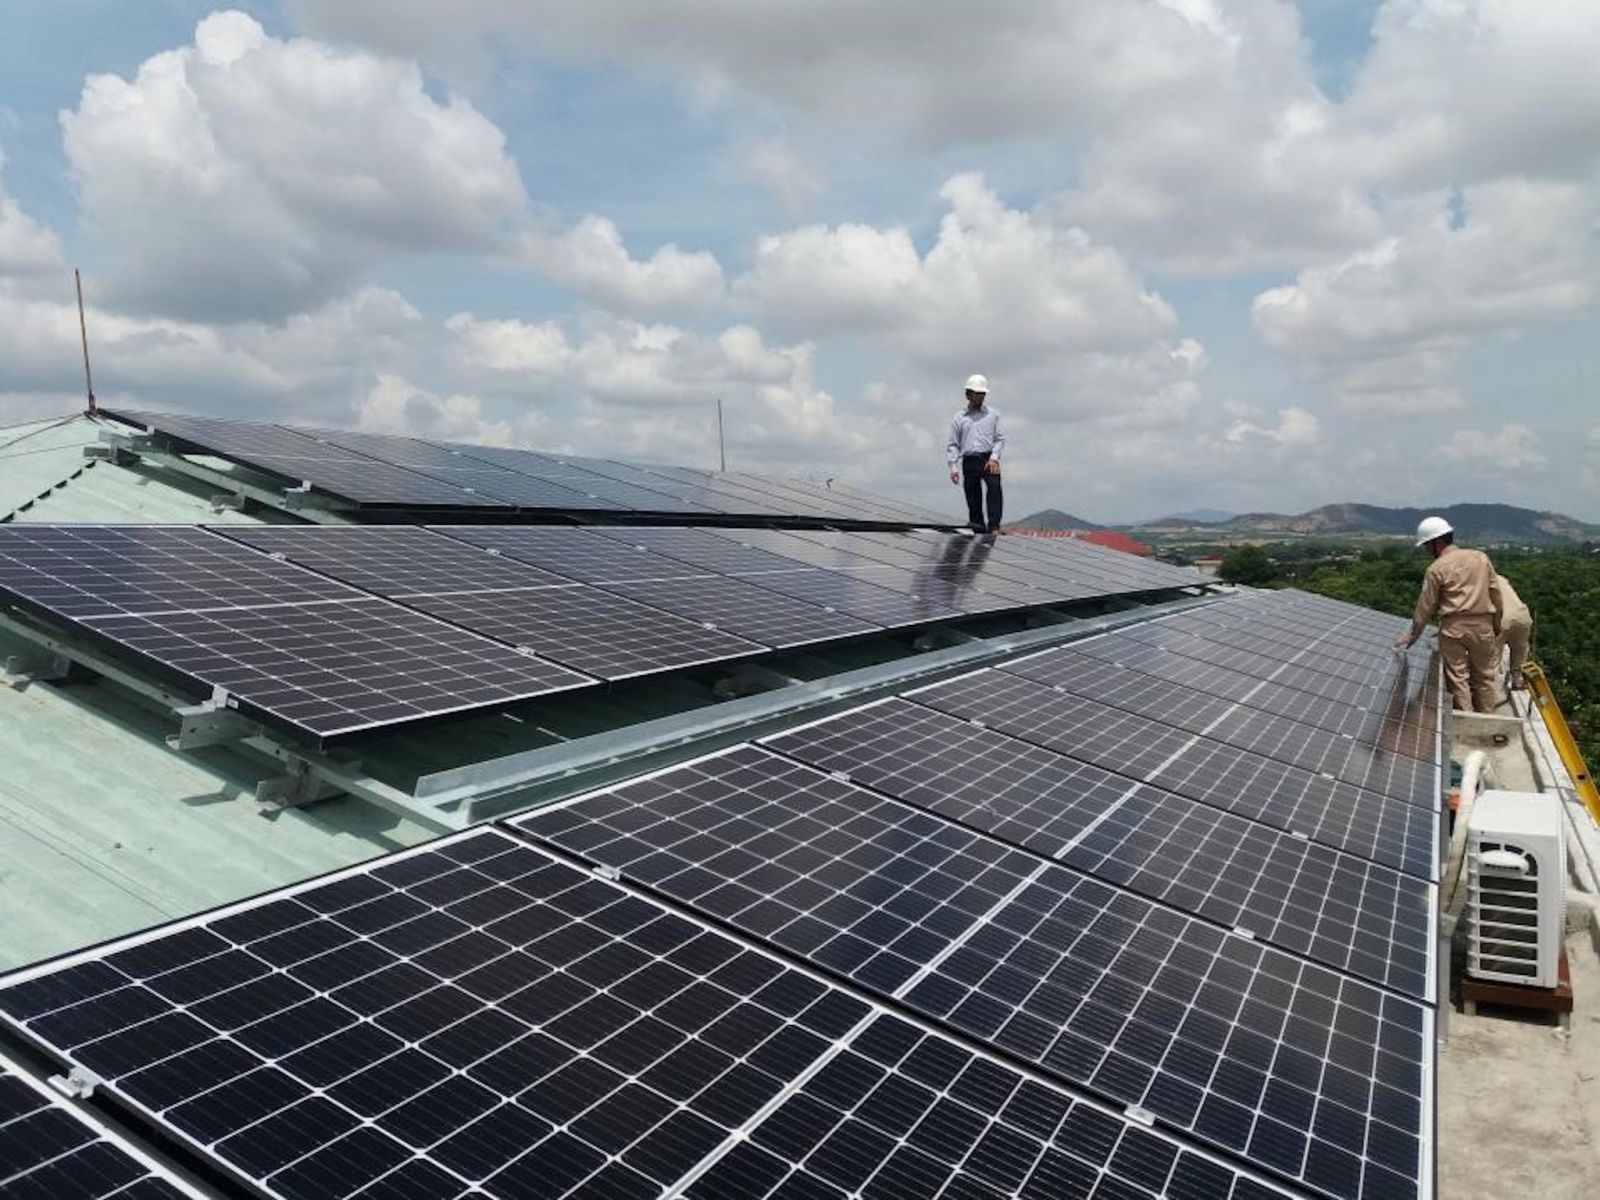  Dự án điện mặt trời được thực hiện với 80% vốn đi vay của doanh nghiệp